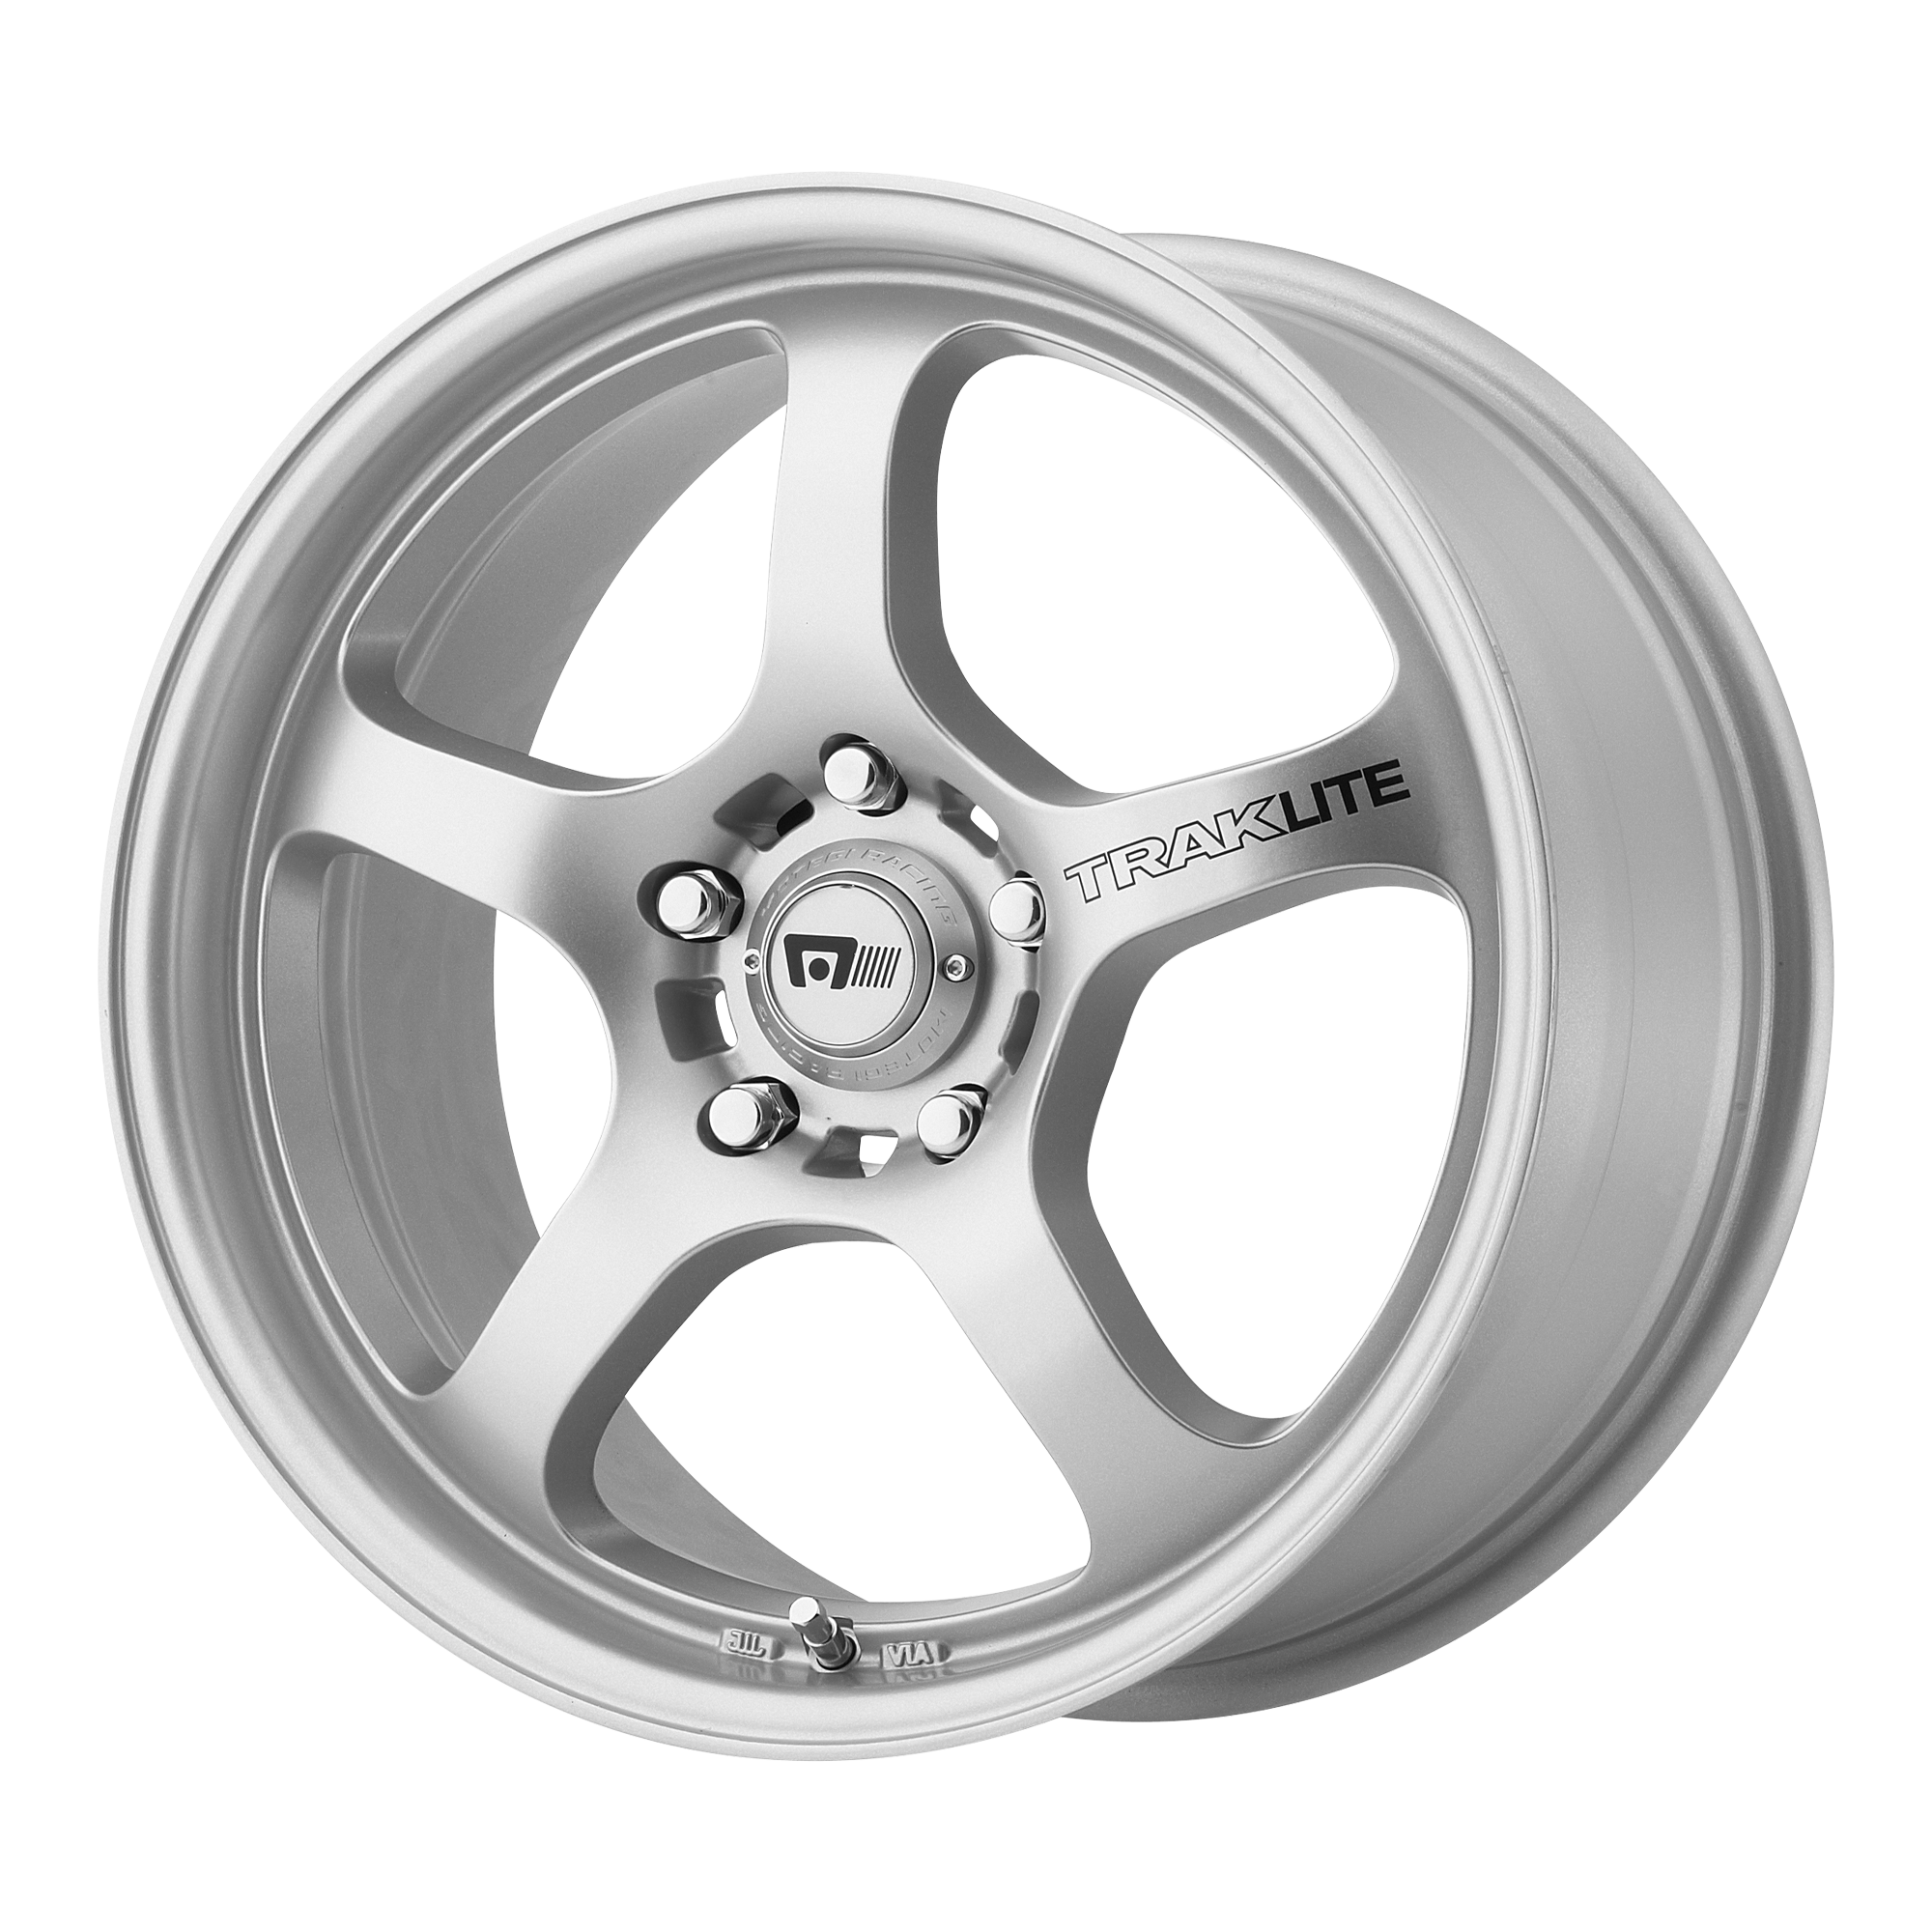 Motegi Wheels 18 x 8.5. Колесный диск BWR 171 7.5x17/5x114.3 d73.1 et40 Silver. Колесный диск oxxo Sentinel 7x17/5x114.3 d72.6 et40 Silver. Диски Motegi Racing r17.